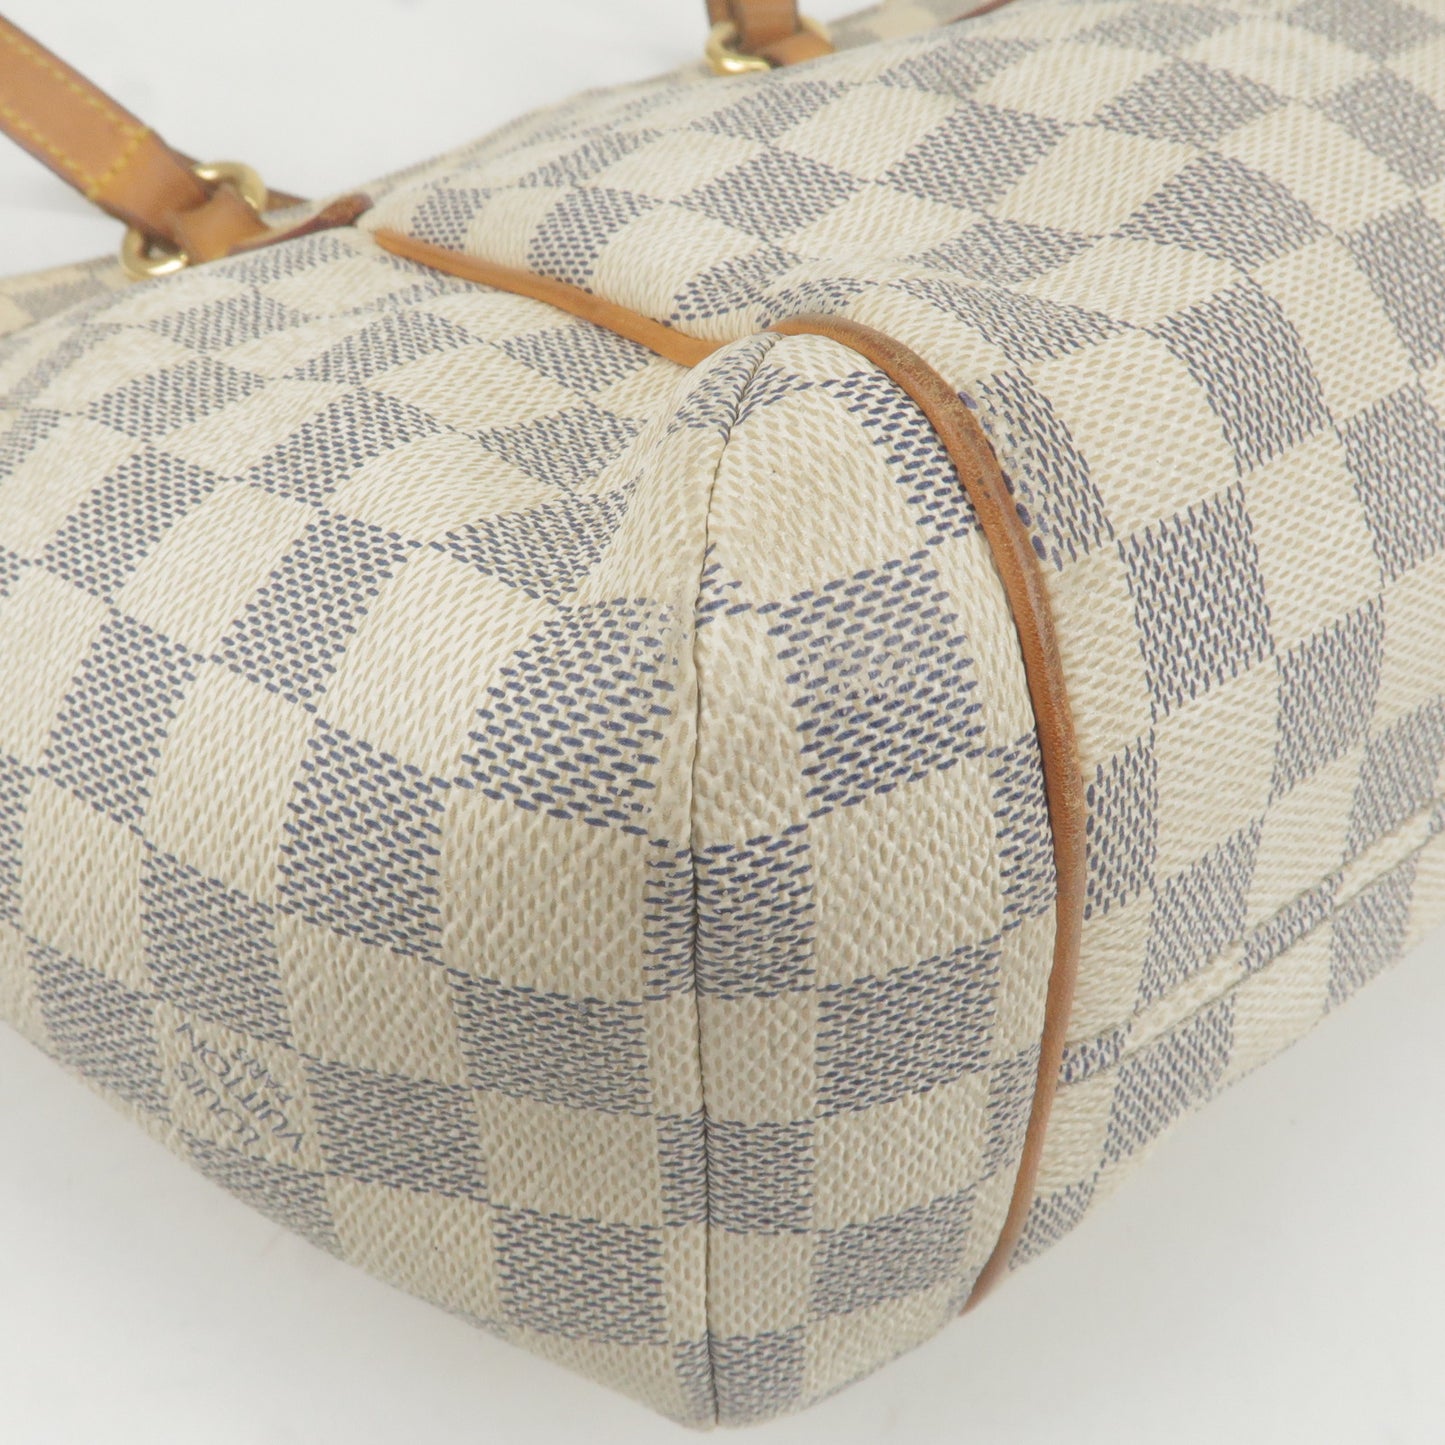 Louis Vuitton Damier Azur Totally PM Tote Bag Hand Bag N41280